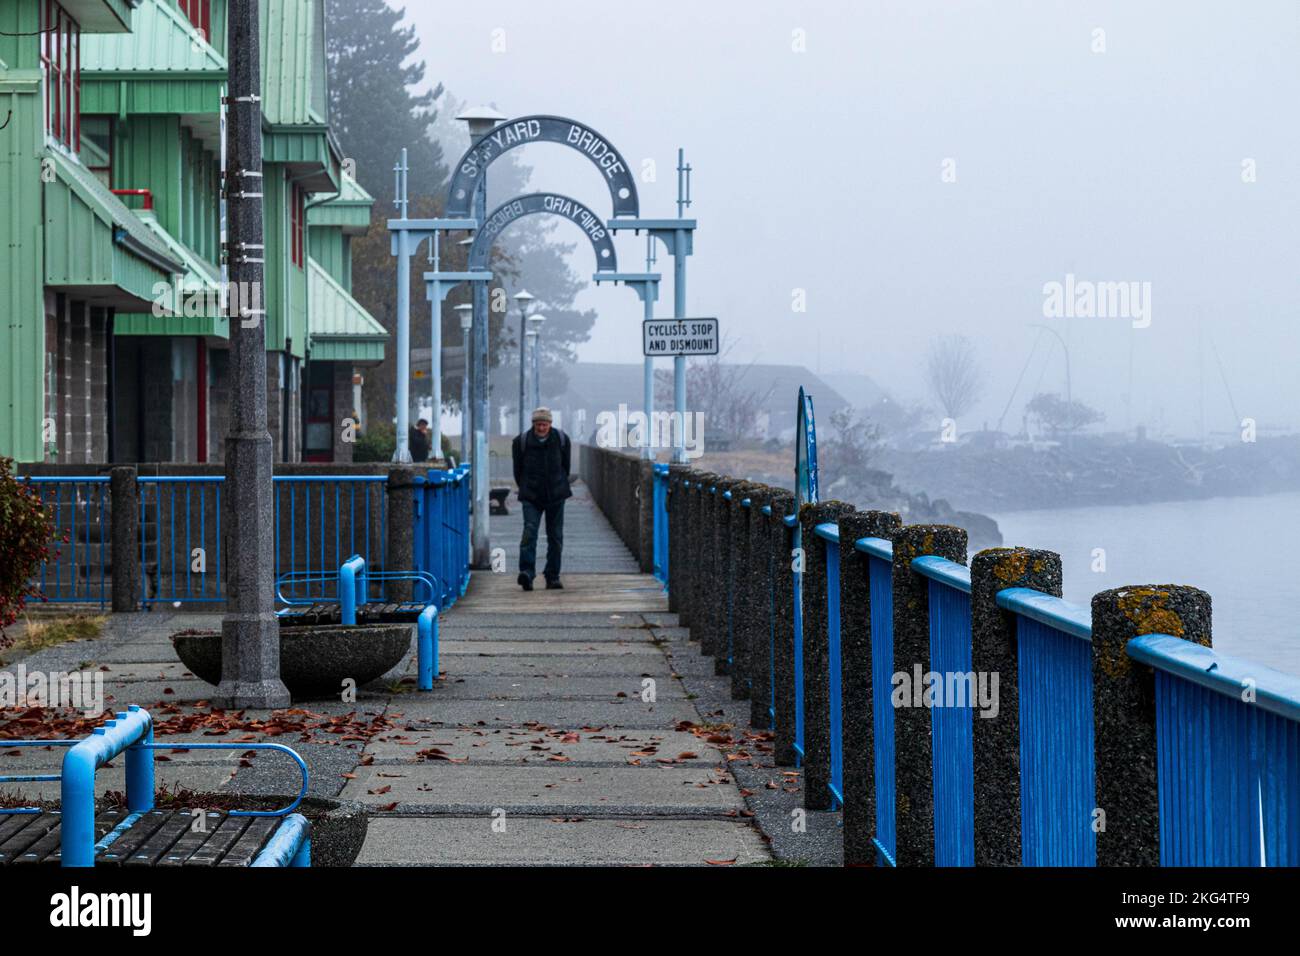 Passerella sul lungomare in nebbia, con il vecchio che cammina sulla passerella in legno. Ambiente tranquillo e tranquillo. Foto Stock